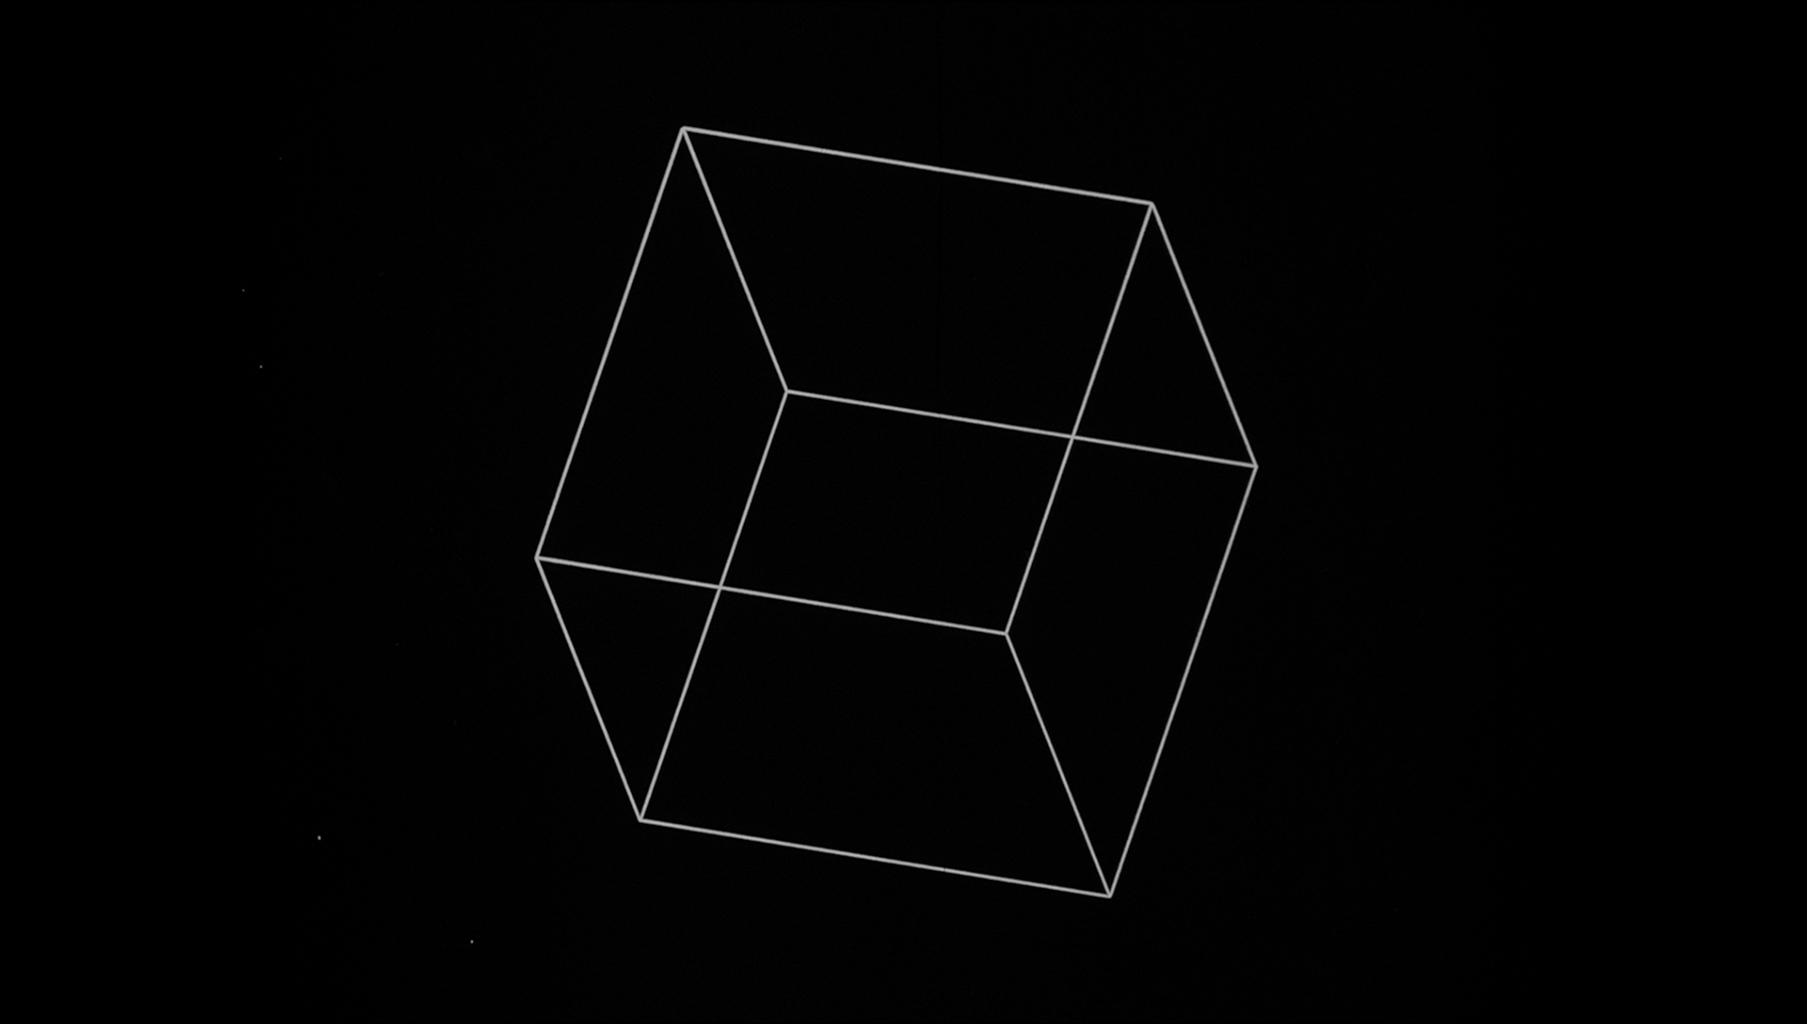  Manfred Mohr, Cubic Limit, 1973-1974. Film 16 mm algorithmique généré par ordinateur et converti en format digital, 4 minute © Manfred Mohr